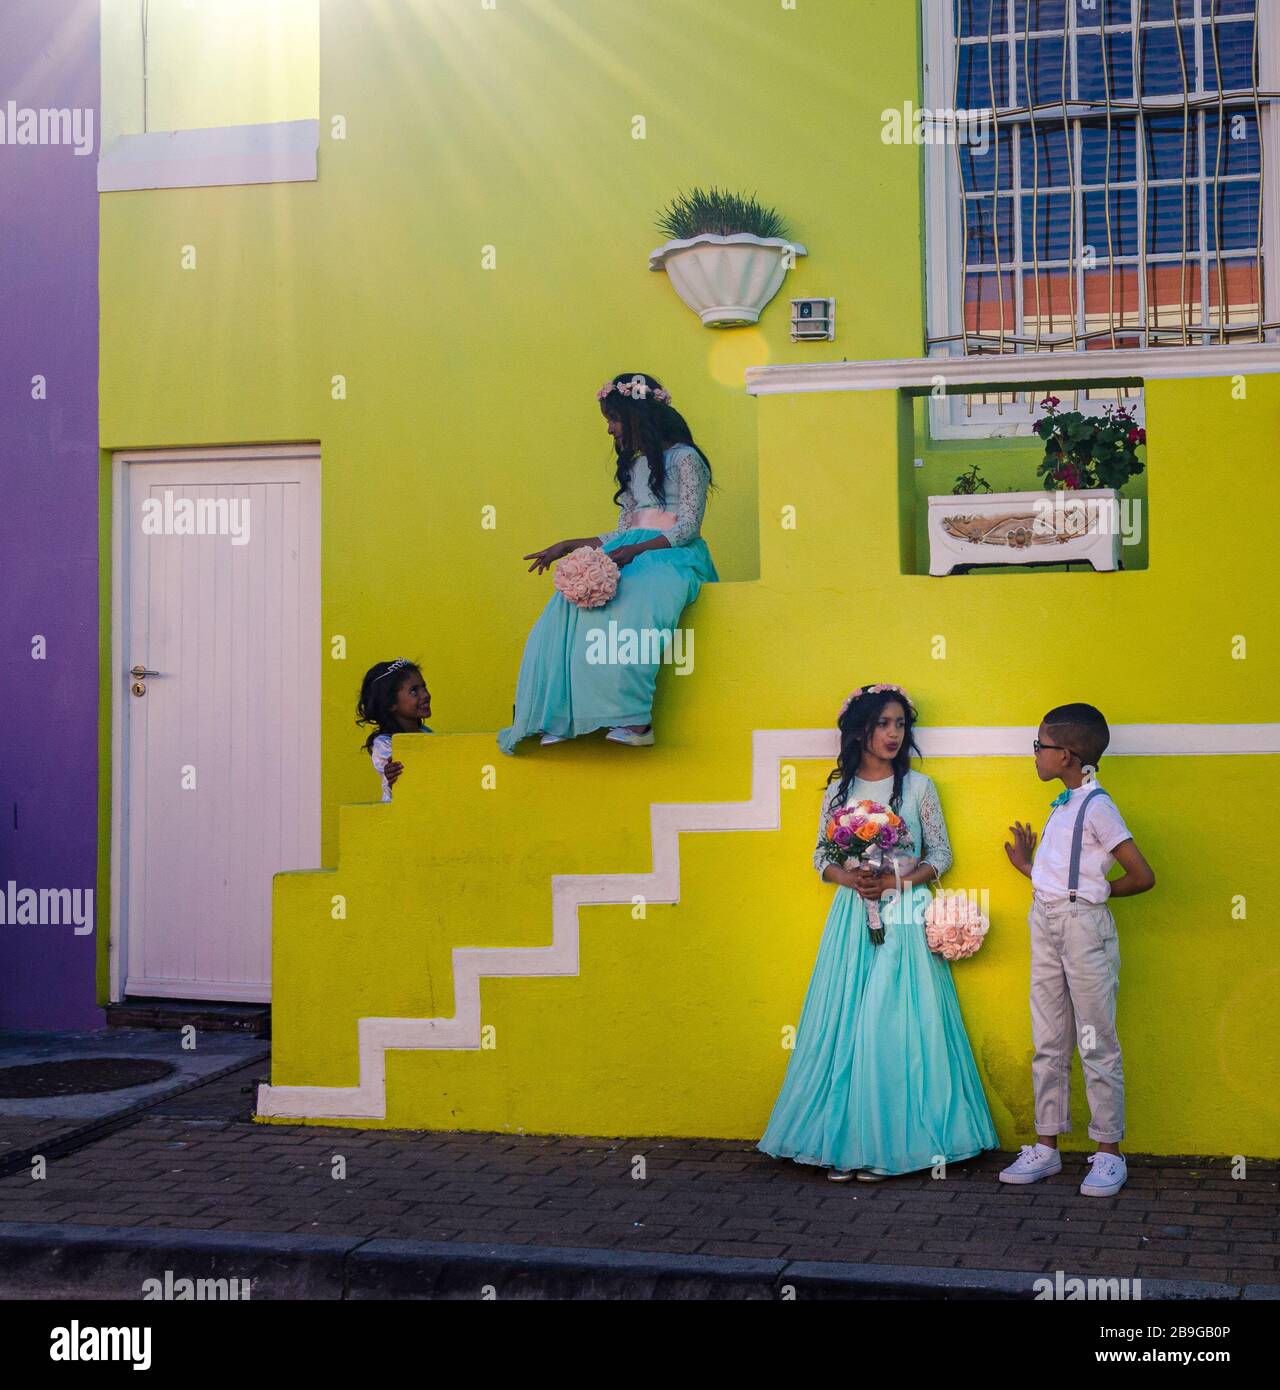 Les enfants africains vêtus intelligemment pour un mariage local dans le quartier musulman Bo Kaap de Cape Town Afrique du Sud Banque D'Images